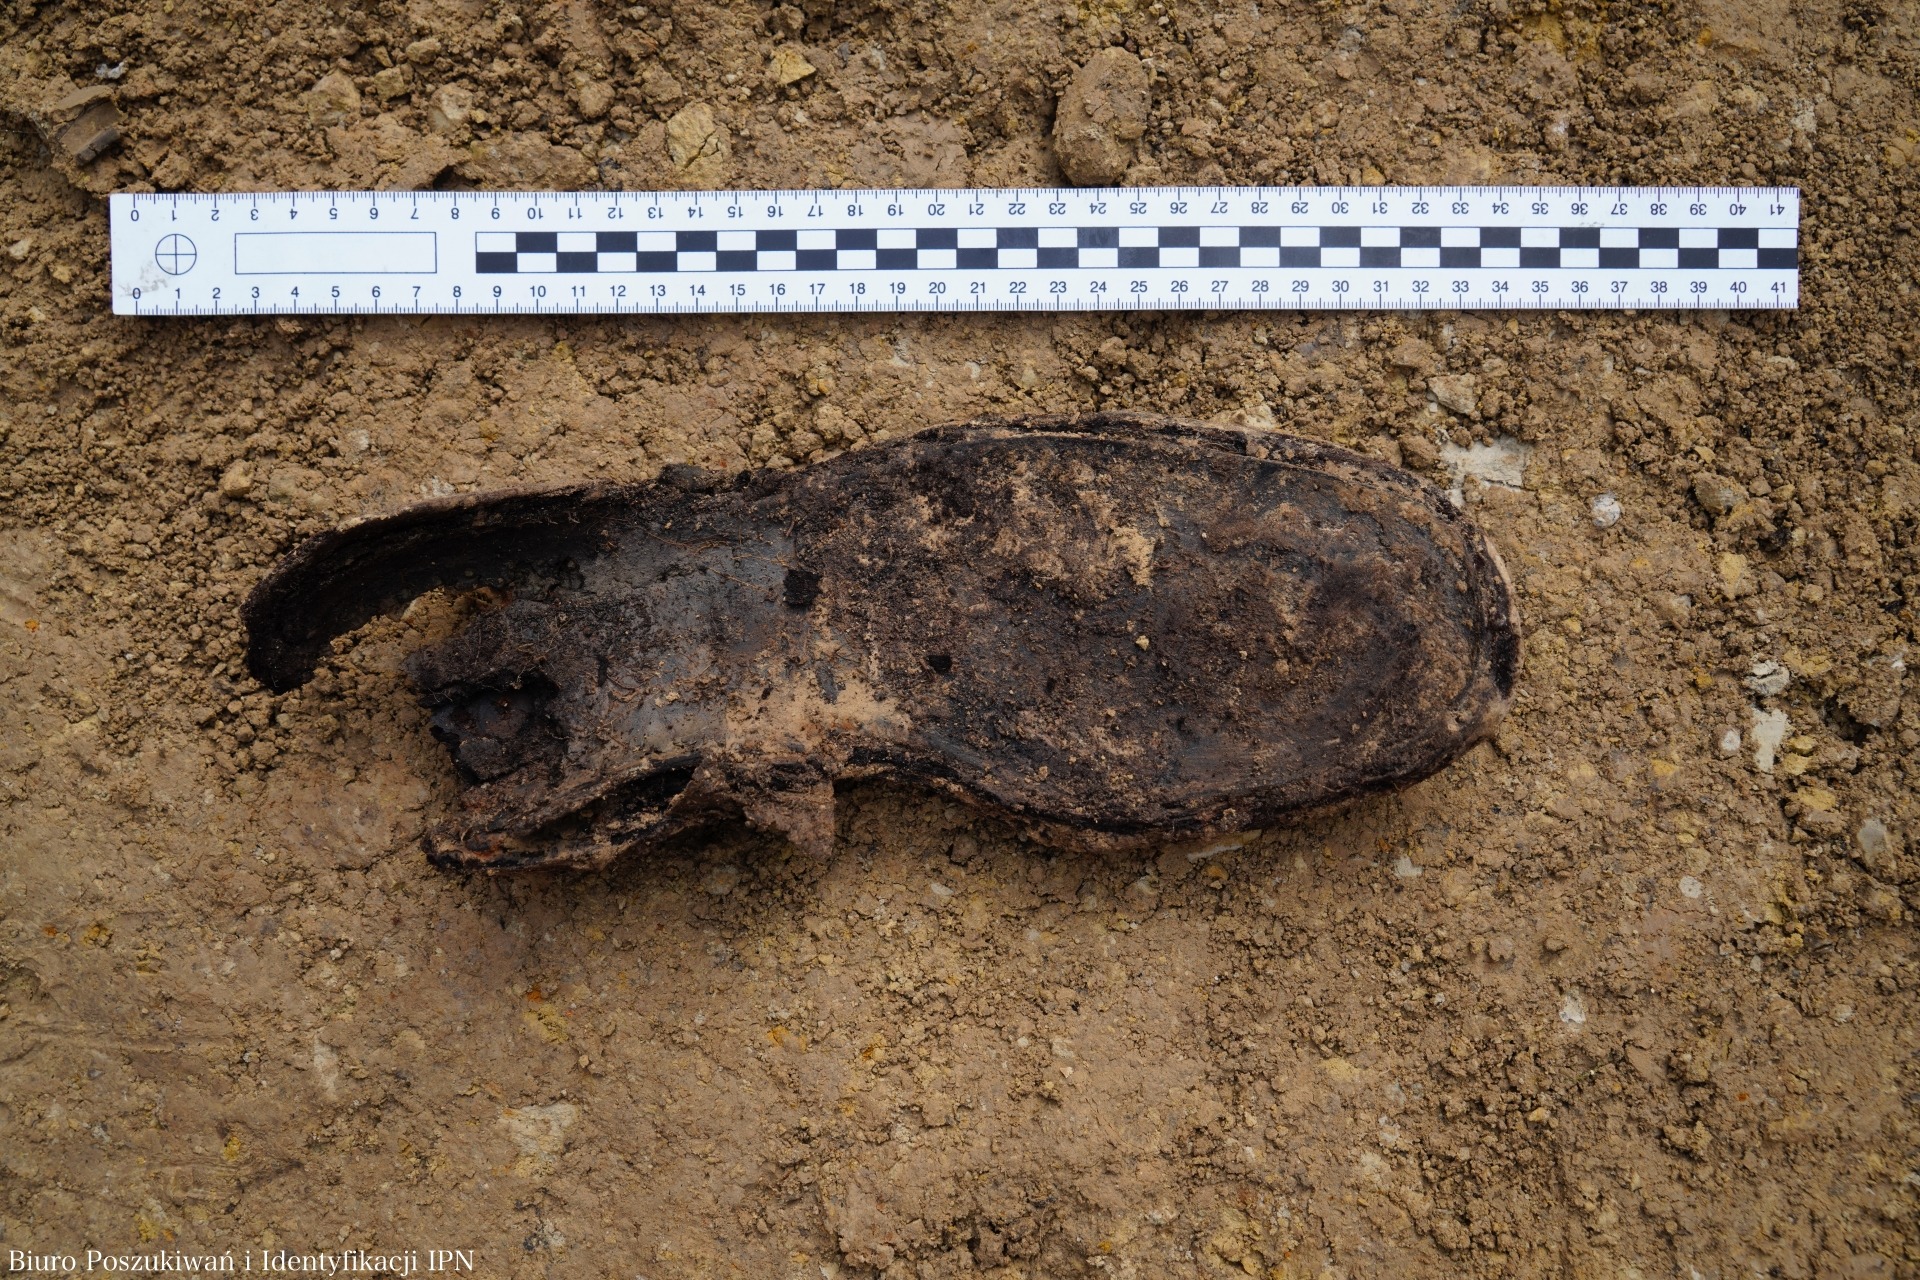 Na górkach czechowskich znaleziono ludzkie kości. Są to szczątki trzech osób (zdjęcia)